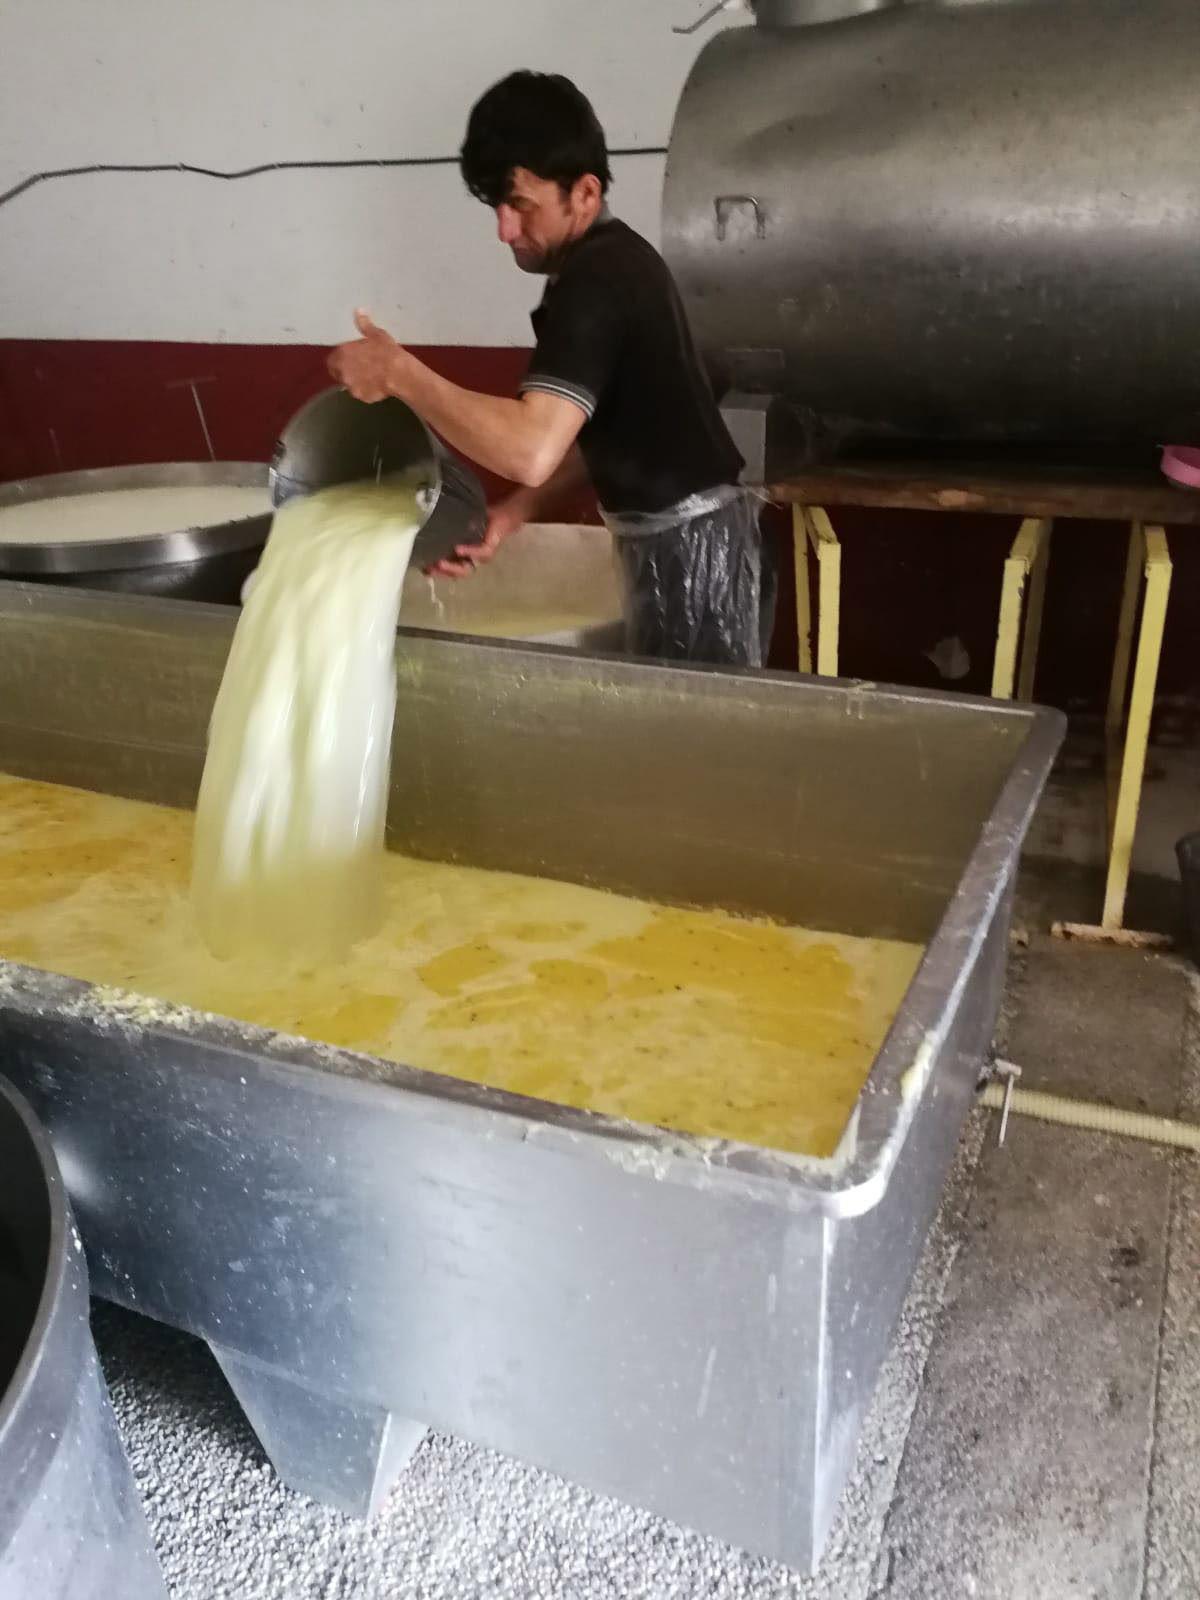 Erzurumda kaşar peyniri imalathanesinde iğrenç görüntü